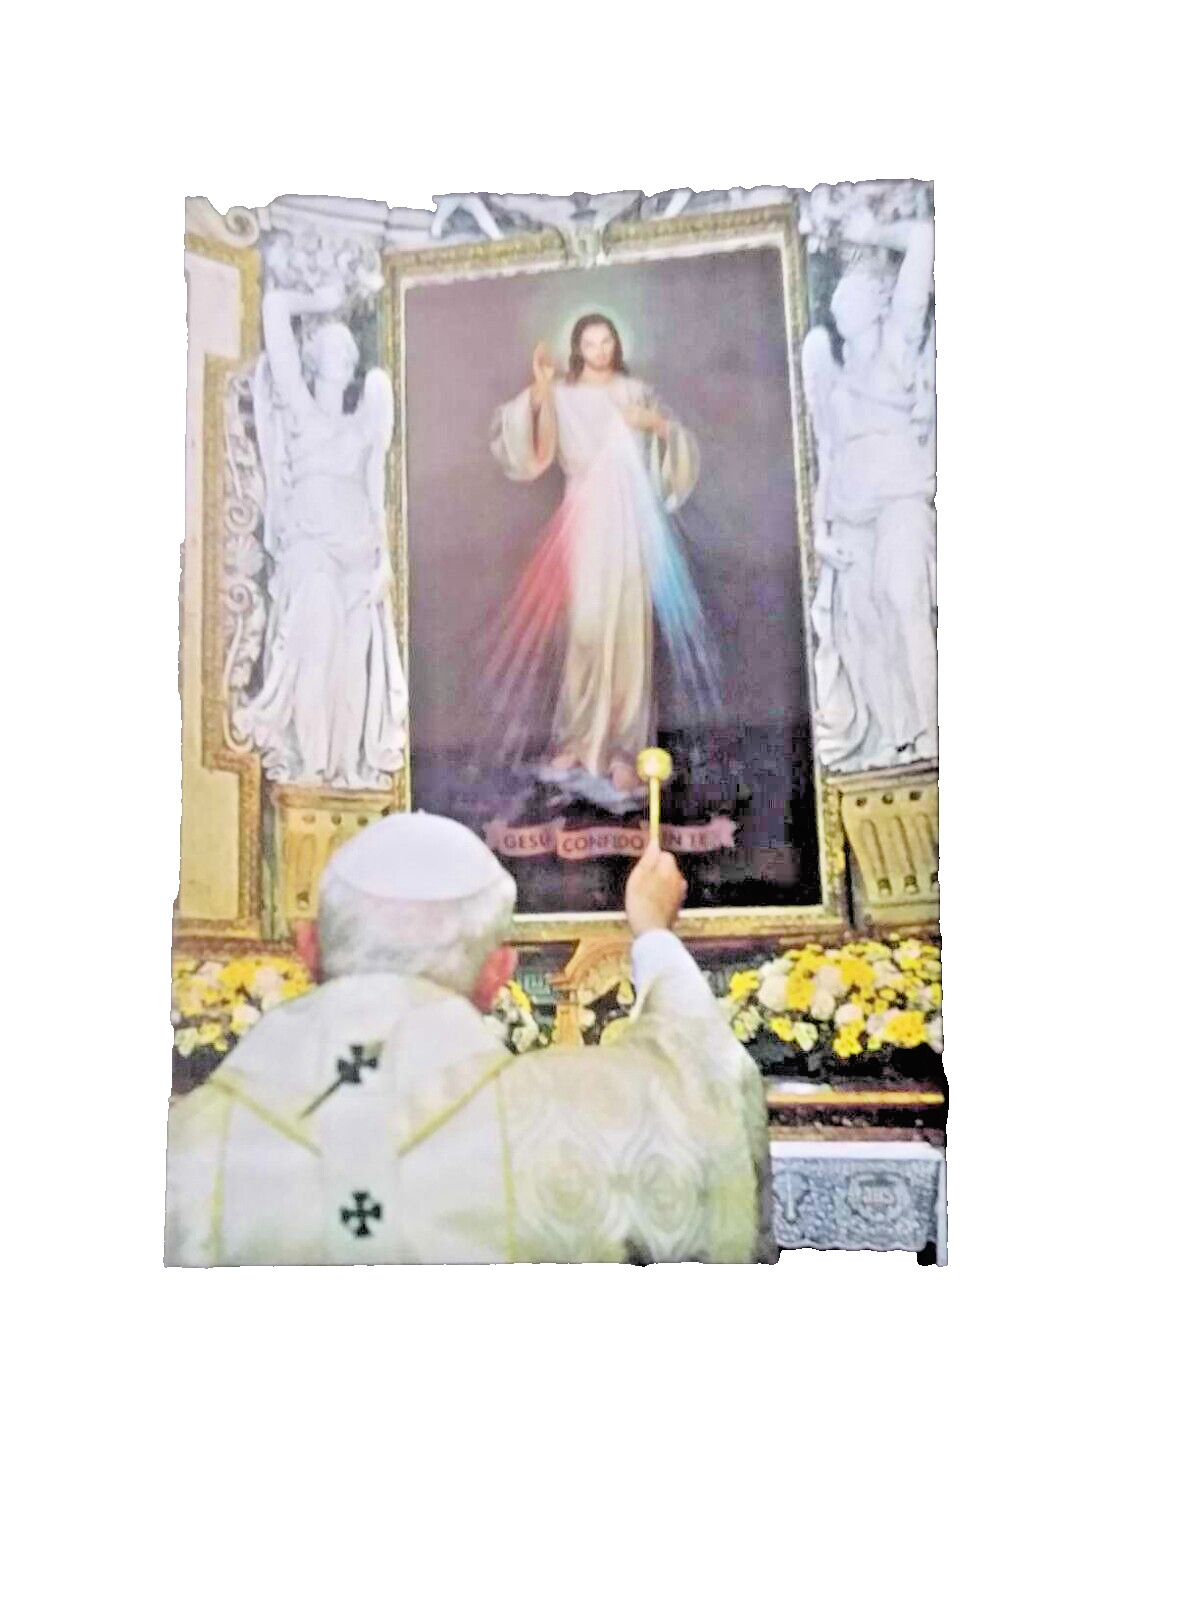 Pope John Paul II Signed Prayer Card 2005 From Vatican Rare